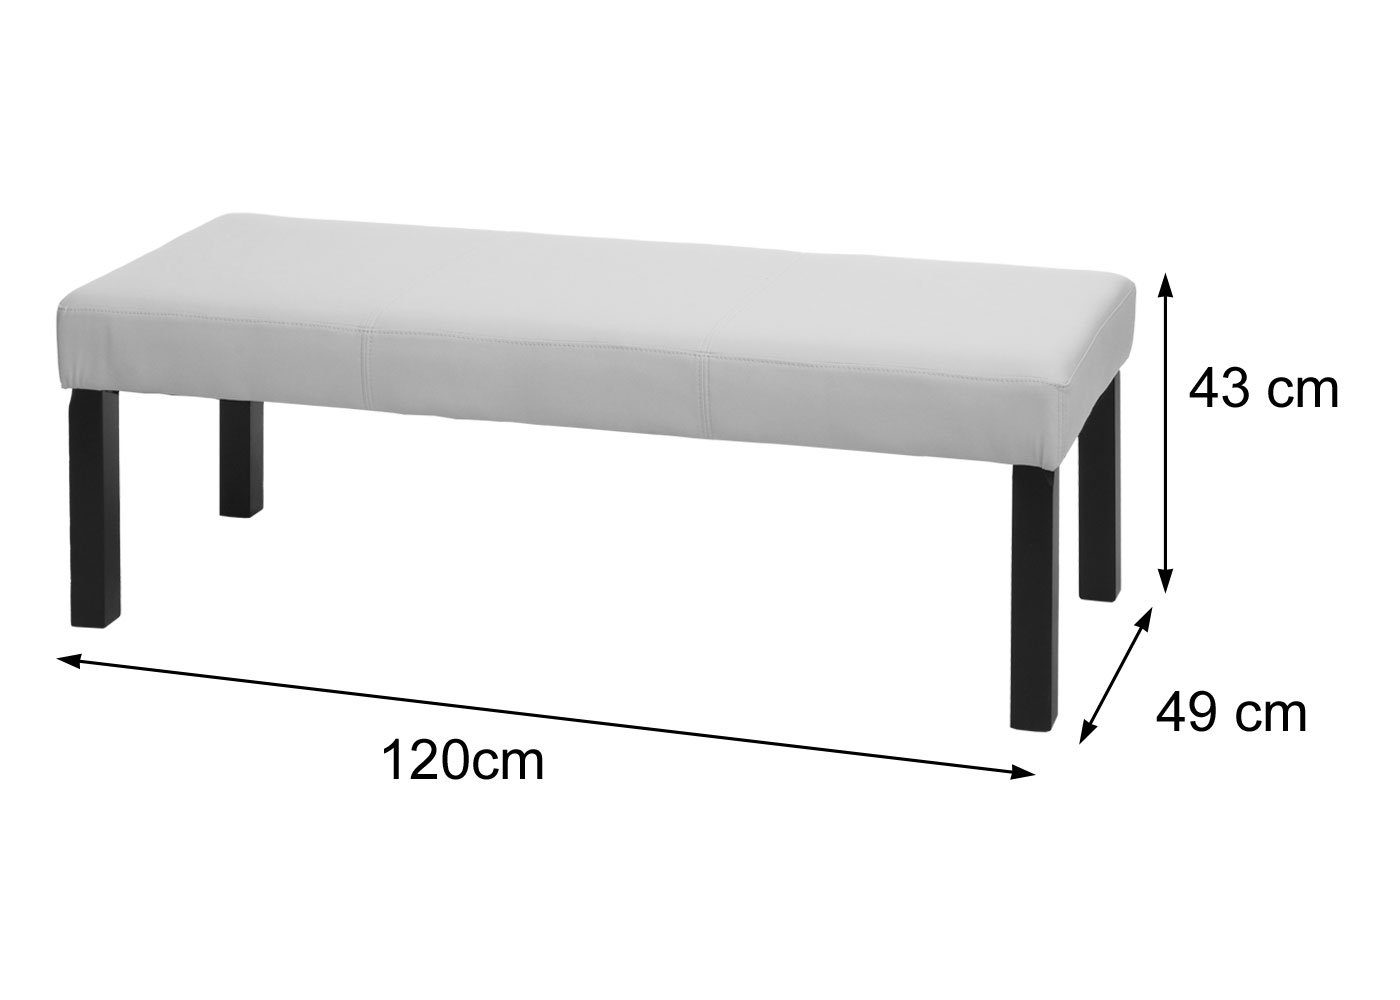 MCW Stabile modernes Design, braun M37S, Sitzbank beige Sitzfläche, Füße | Gepolsterte